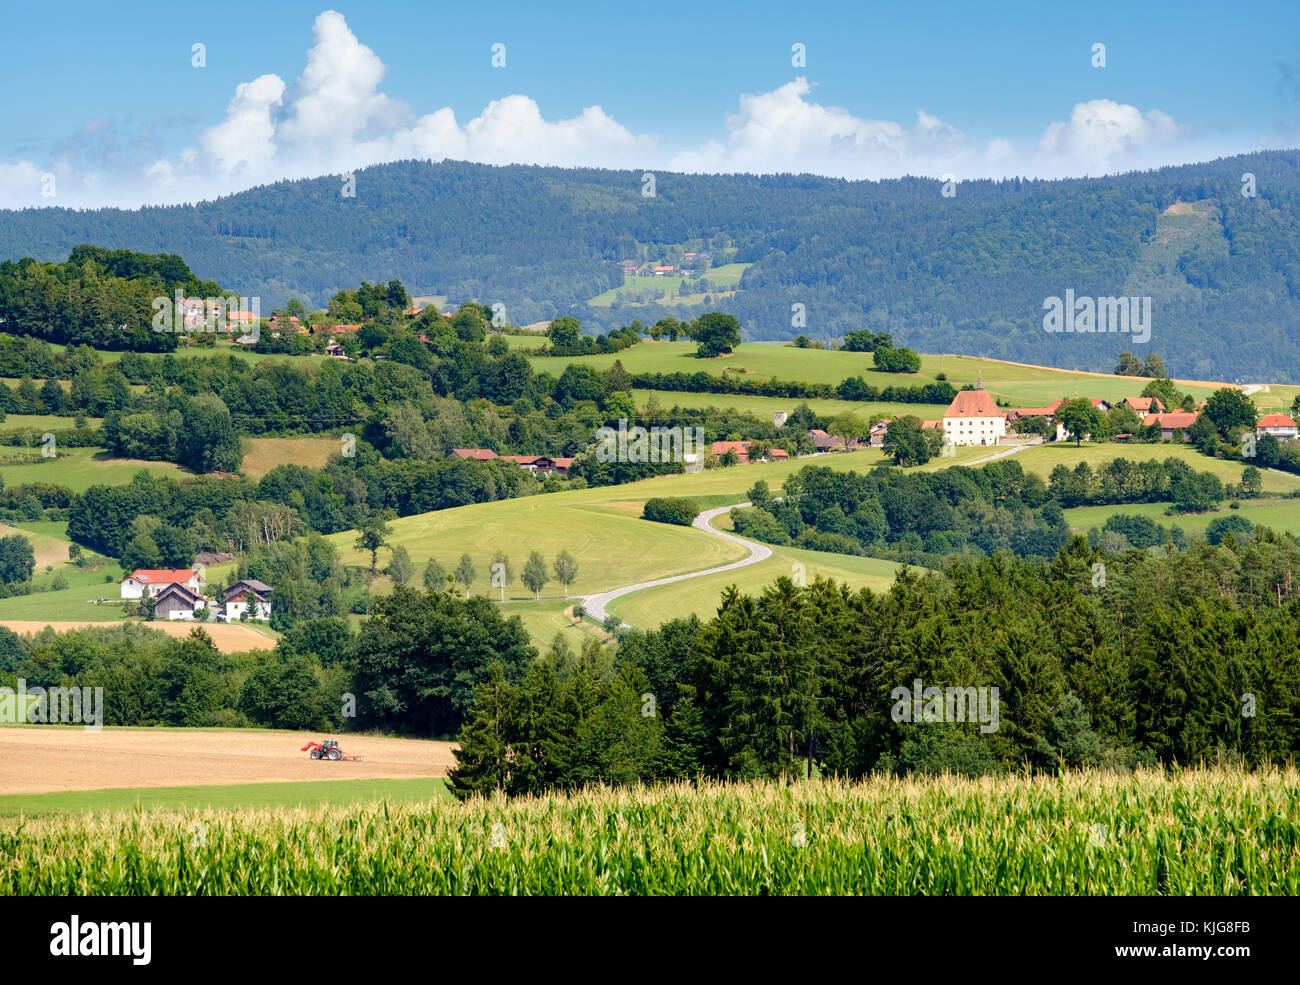 Kinsach-Tal mit Schloss Herrnfehlburg, bei Rattiszell, Bayerischer Wald, Niederbayern, Bayern, Deutschland Stock Photo